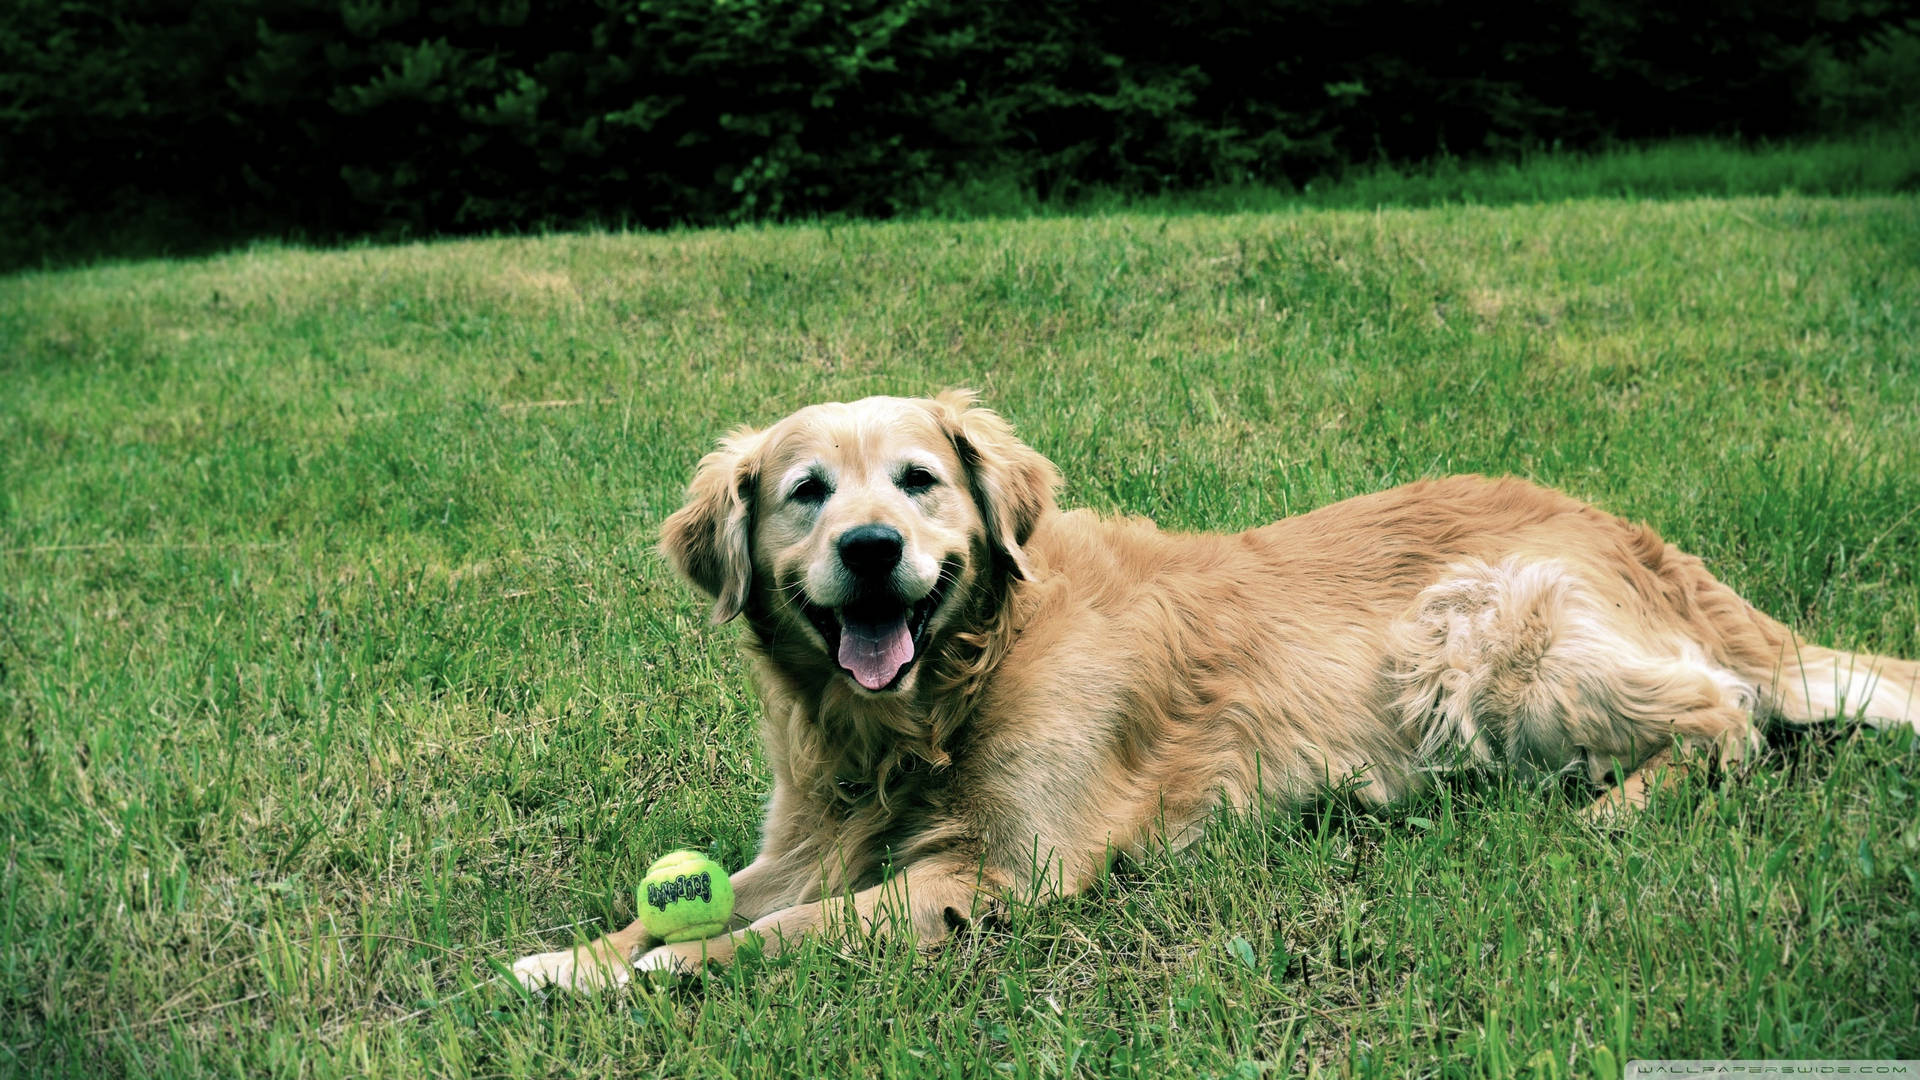 Cute Golden Retriever Dog On Grass